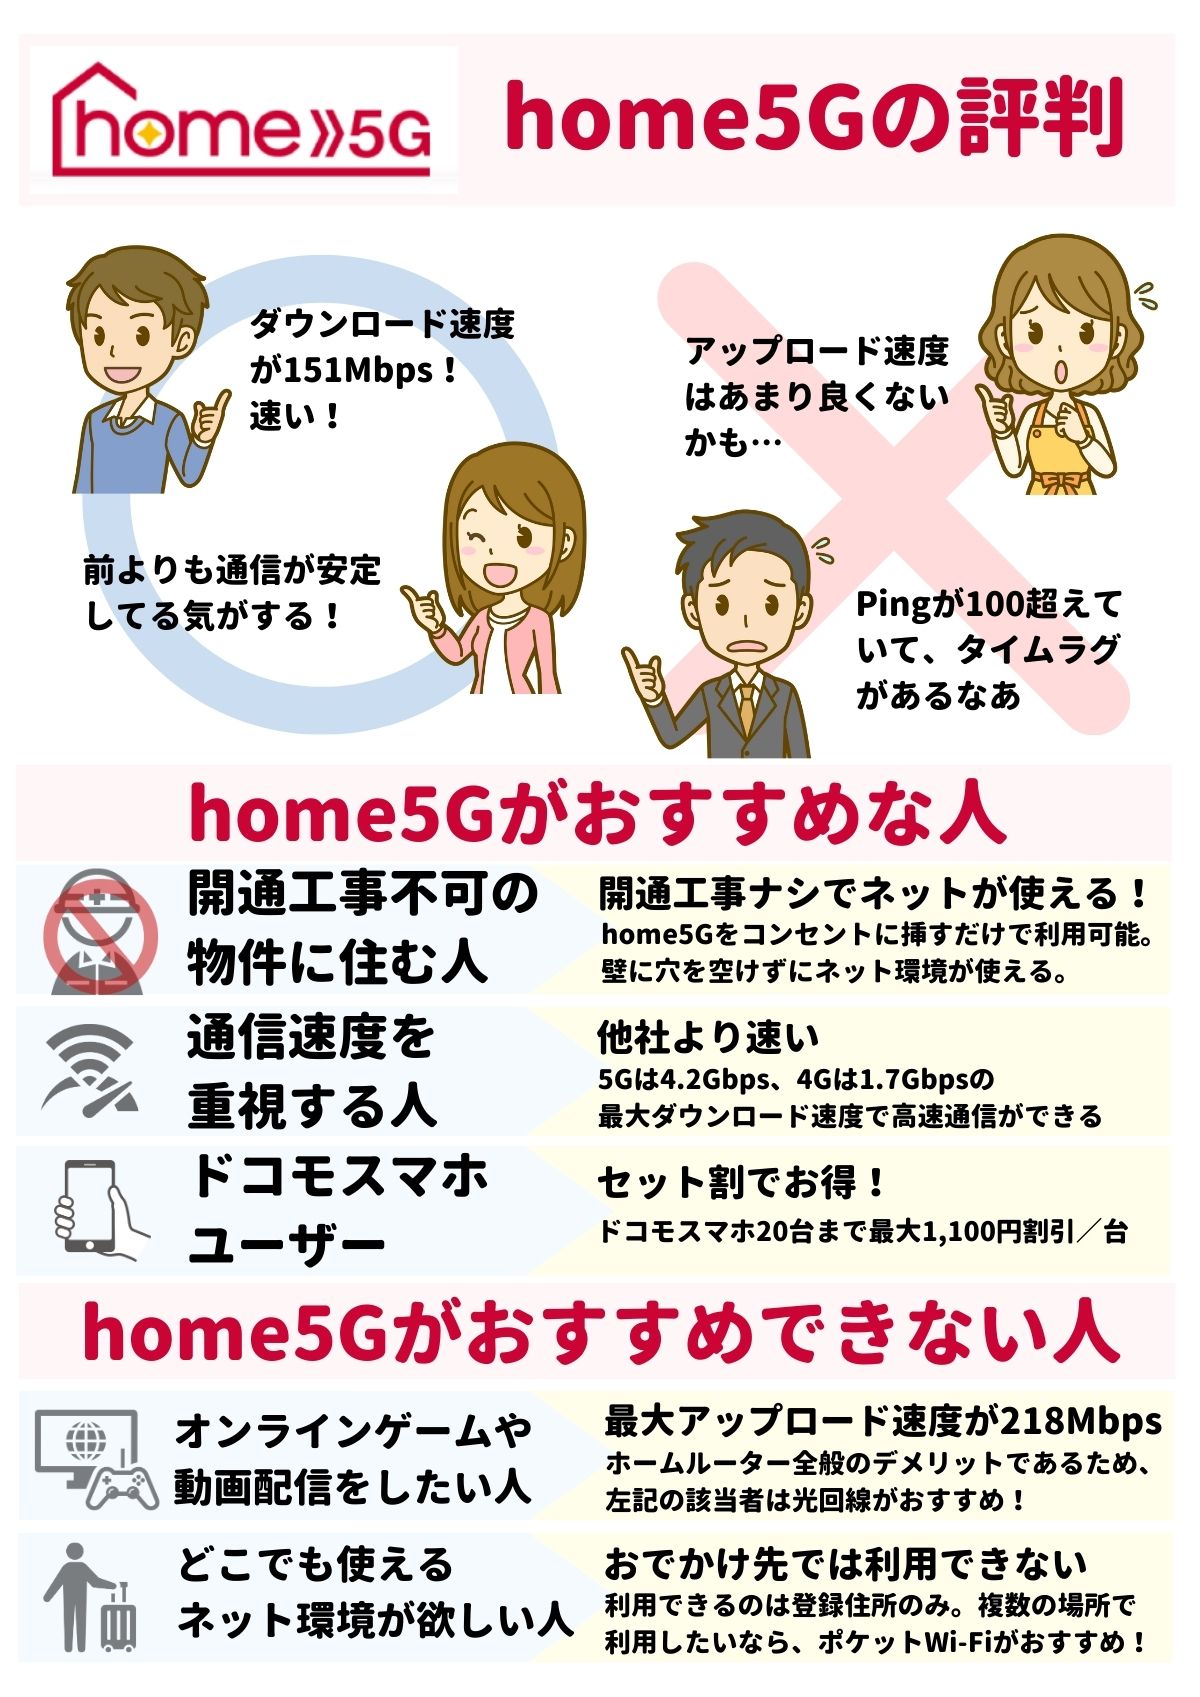 home5G 評判